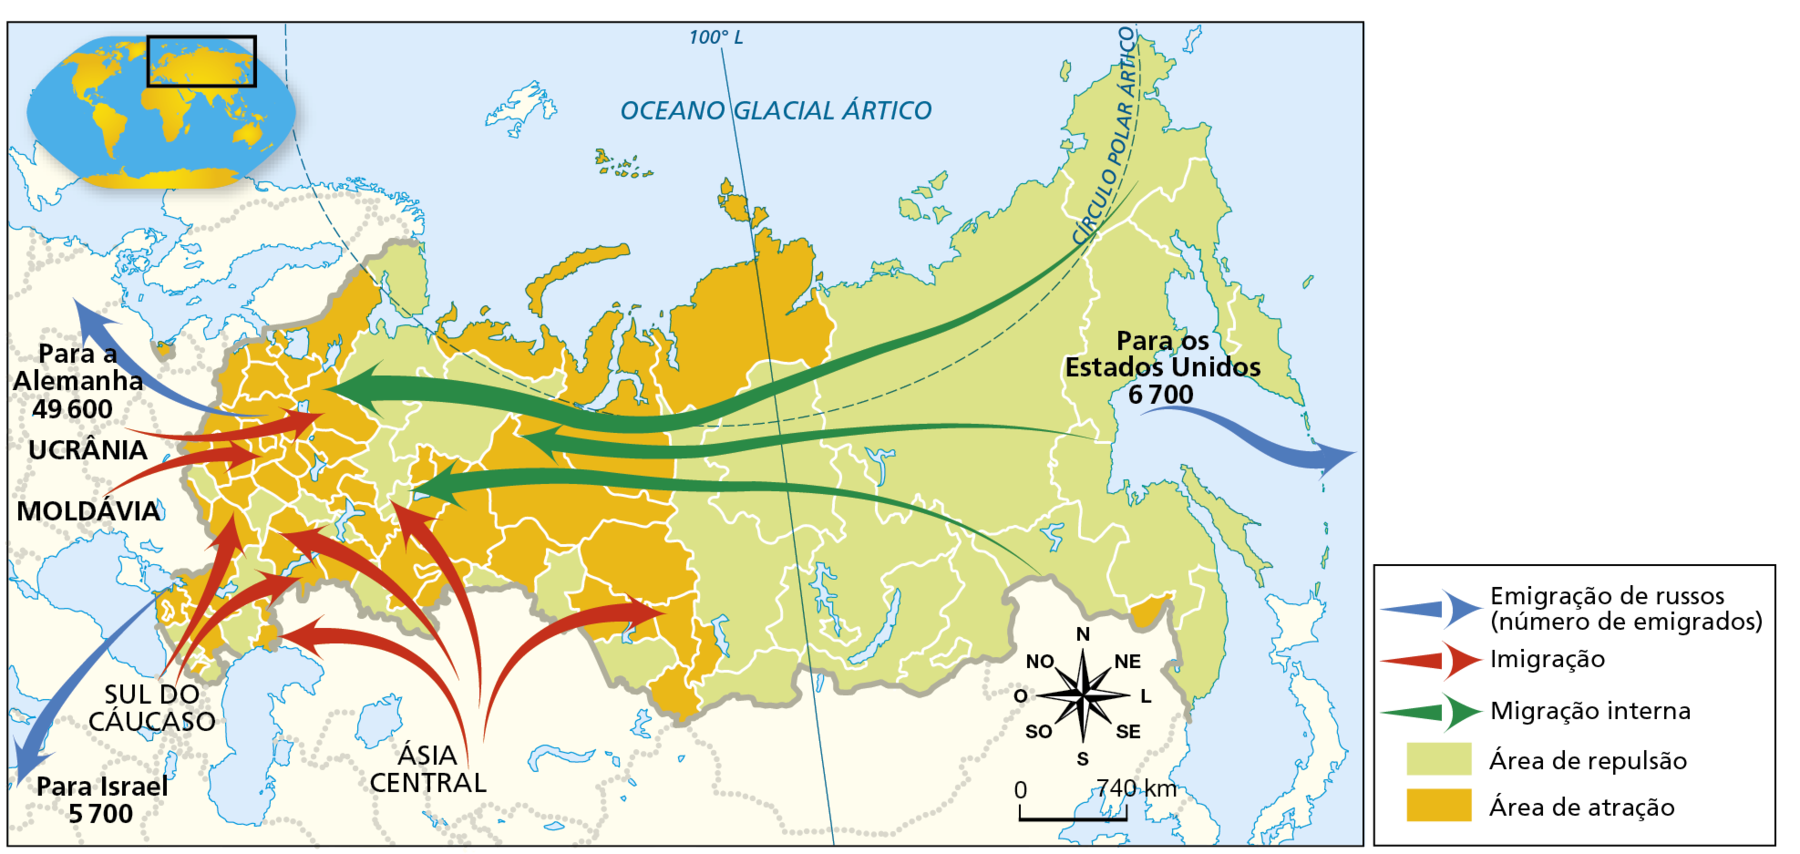 Mapa. Rússia: migrações, 2013. Mapa da Rússia mostrando a direção dos fluxos migratórios e as áreas de atração e repulsão do território. Emigração de russos (número de emigrados): do noroeste da Rússia para a Alemanha, 49.600 emigrantes; do sudoeste da Rússia para Israel, 5.700 emigrantes; do leste da Rússia para os Estados Unidos, 6.700 emigrantes. Imigração: da Ásia Central para a região oeste e centro-sul da Rússia; do sul do Cáucaso para o sudoeste da Rússia; da Ucrânia e Moldávia para o noroeste da Rússia. Migração interna: da porção leste para a oeste da Rússia. Área de repulsão: predominantemente nas porções centro-oriental e sul do território russo. Área de atração: predominantemente na porção centro-ocidental, com exceção de algumas áreas. Na parte inferior direita, rosa dos ventos e escala de 0 a 740 quilômetros.